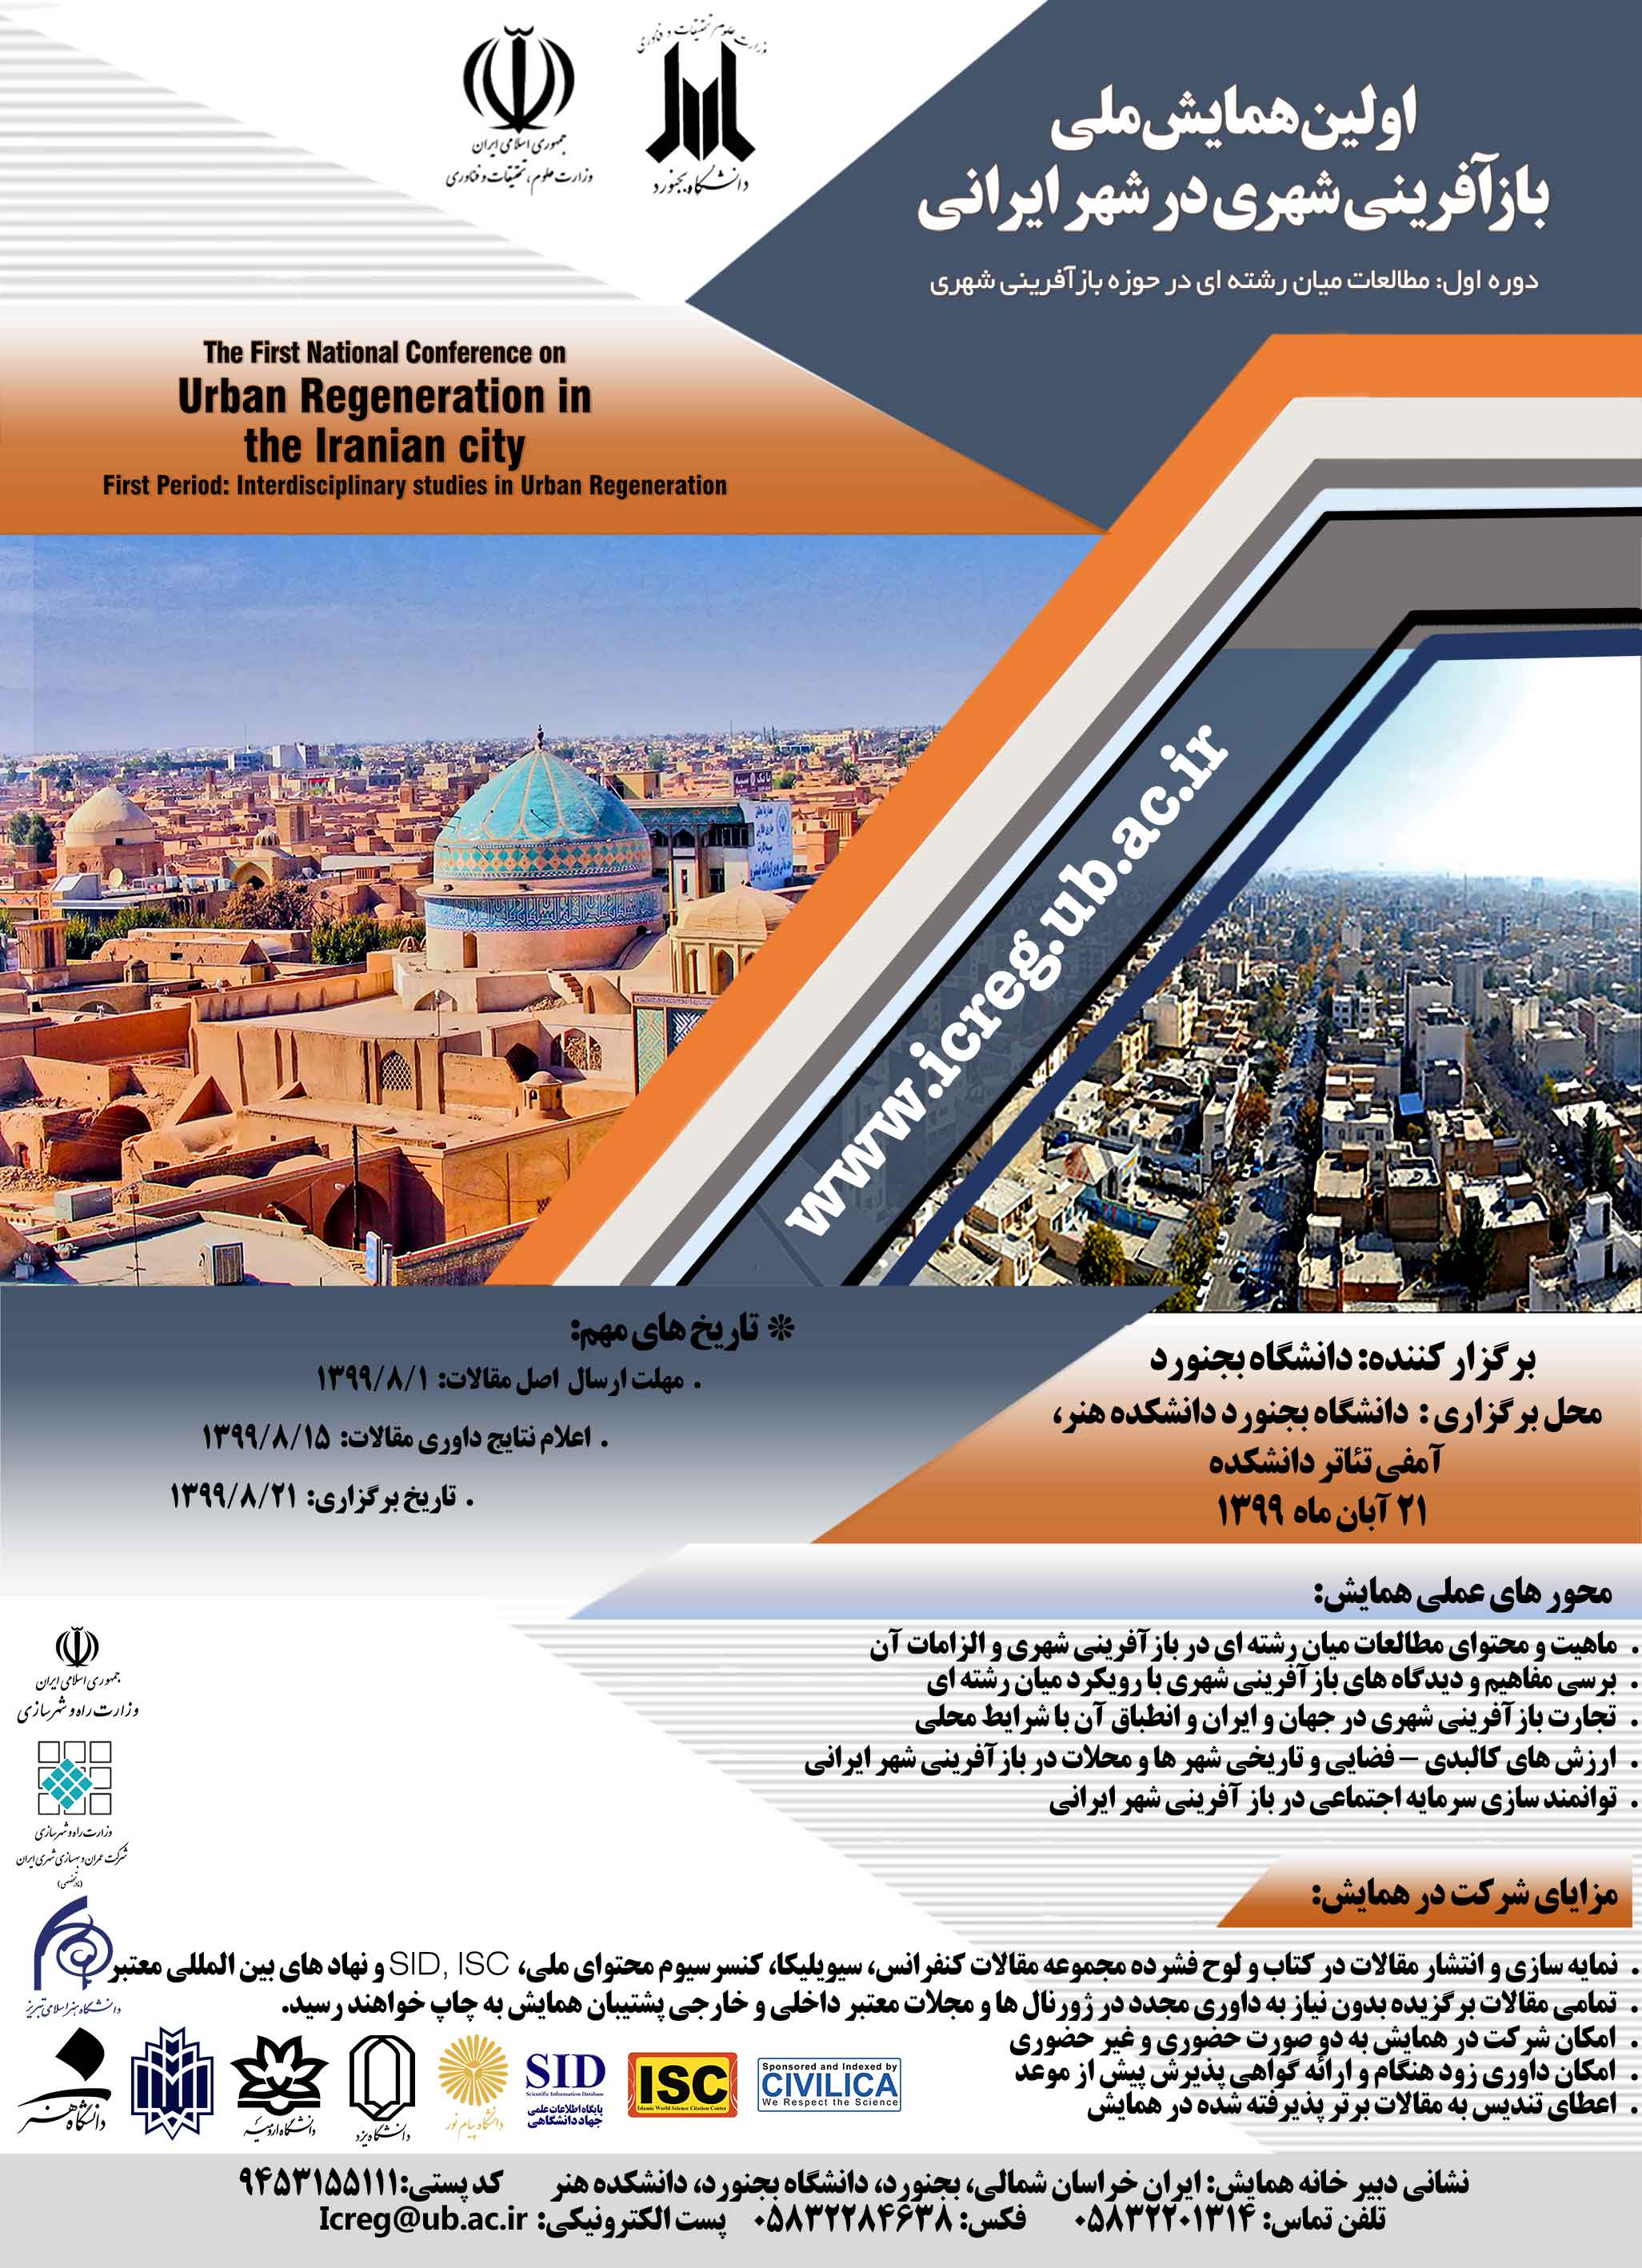 اولین همایش ملی بازآفرینی شهری در شهر ایرانی